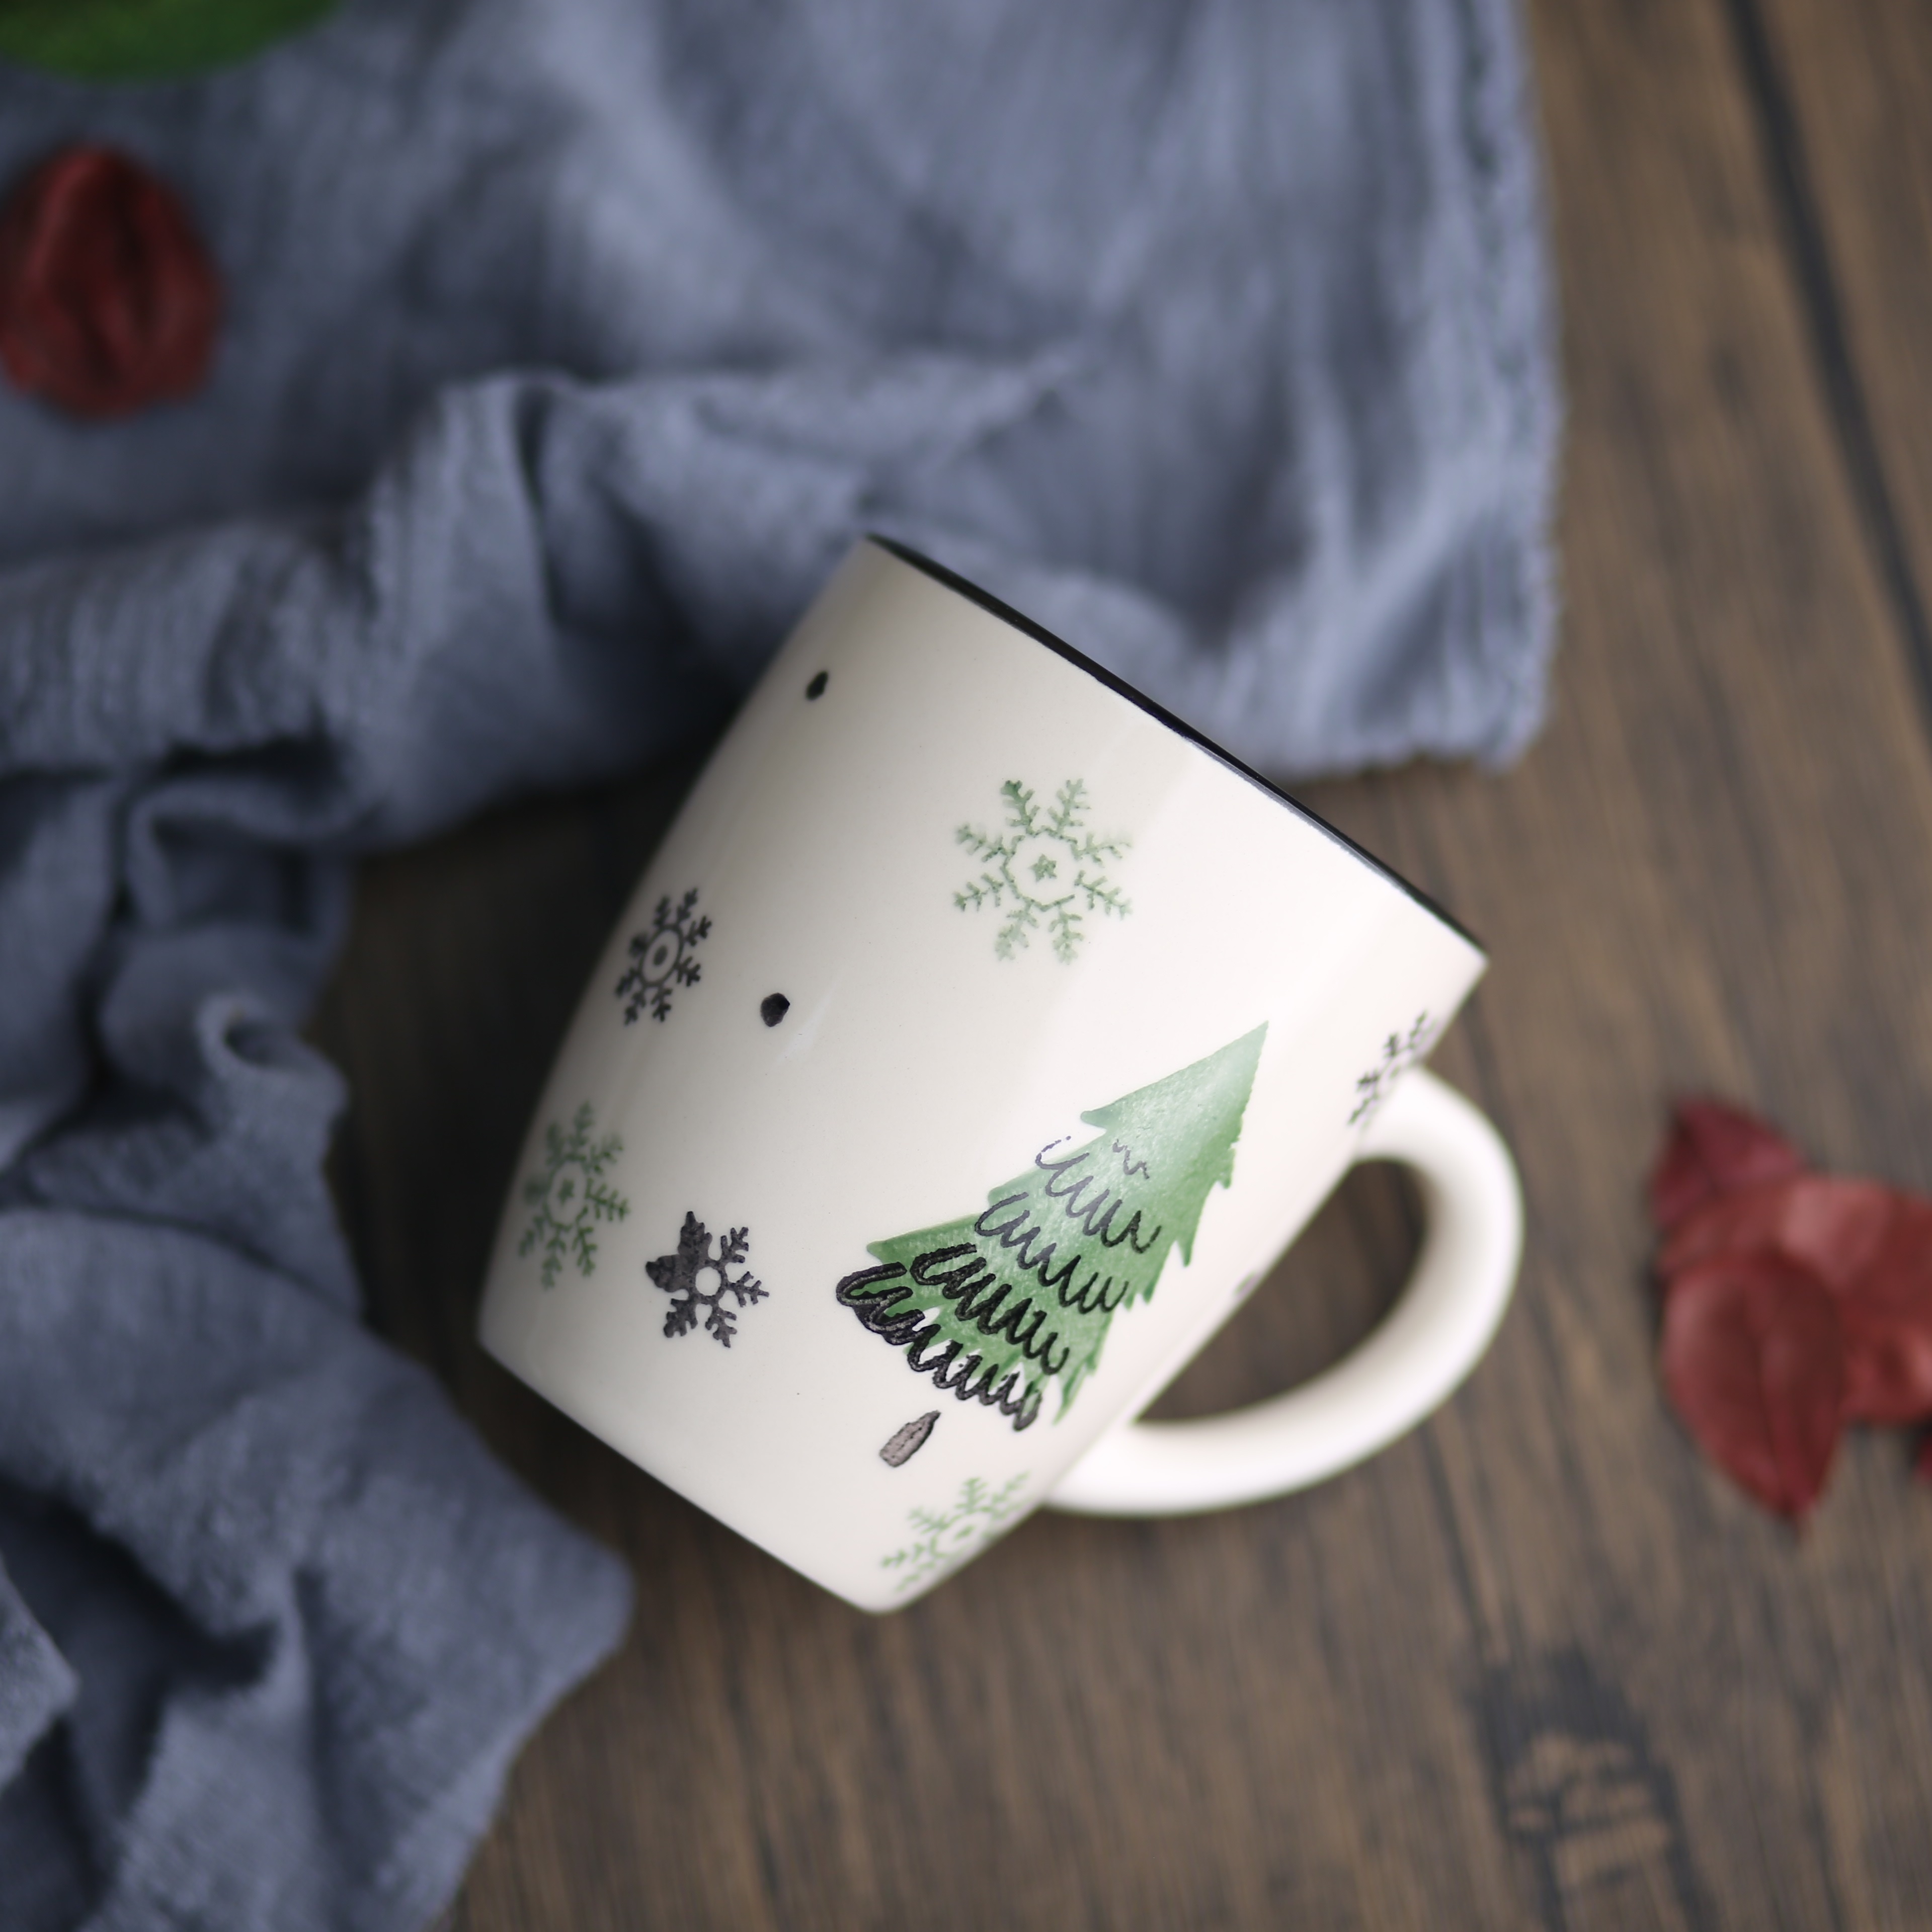 Vintage Christmas Starbucks Mugs, Christmas Coffee Mugs, Sold